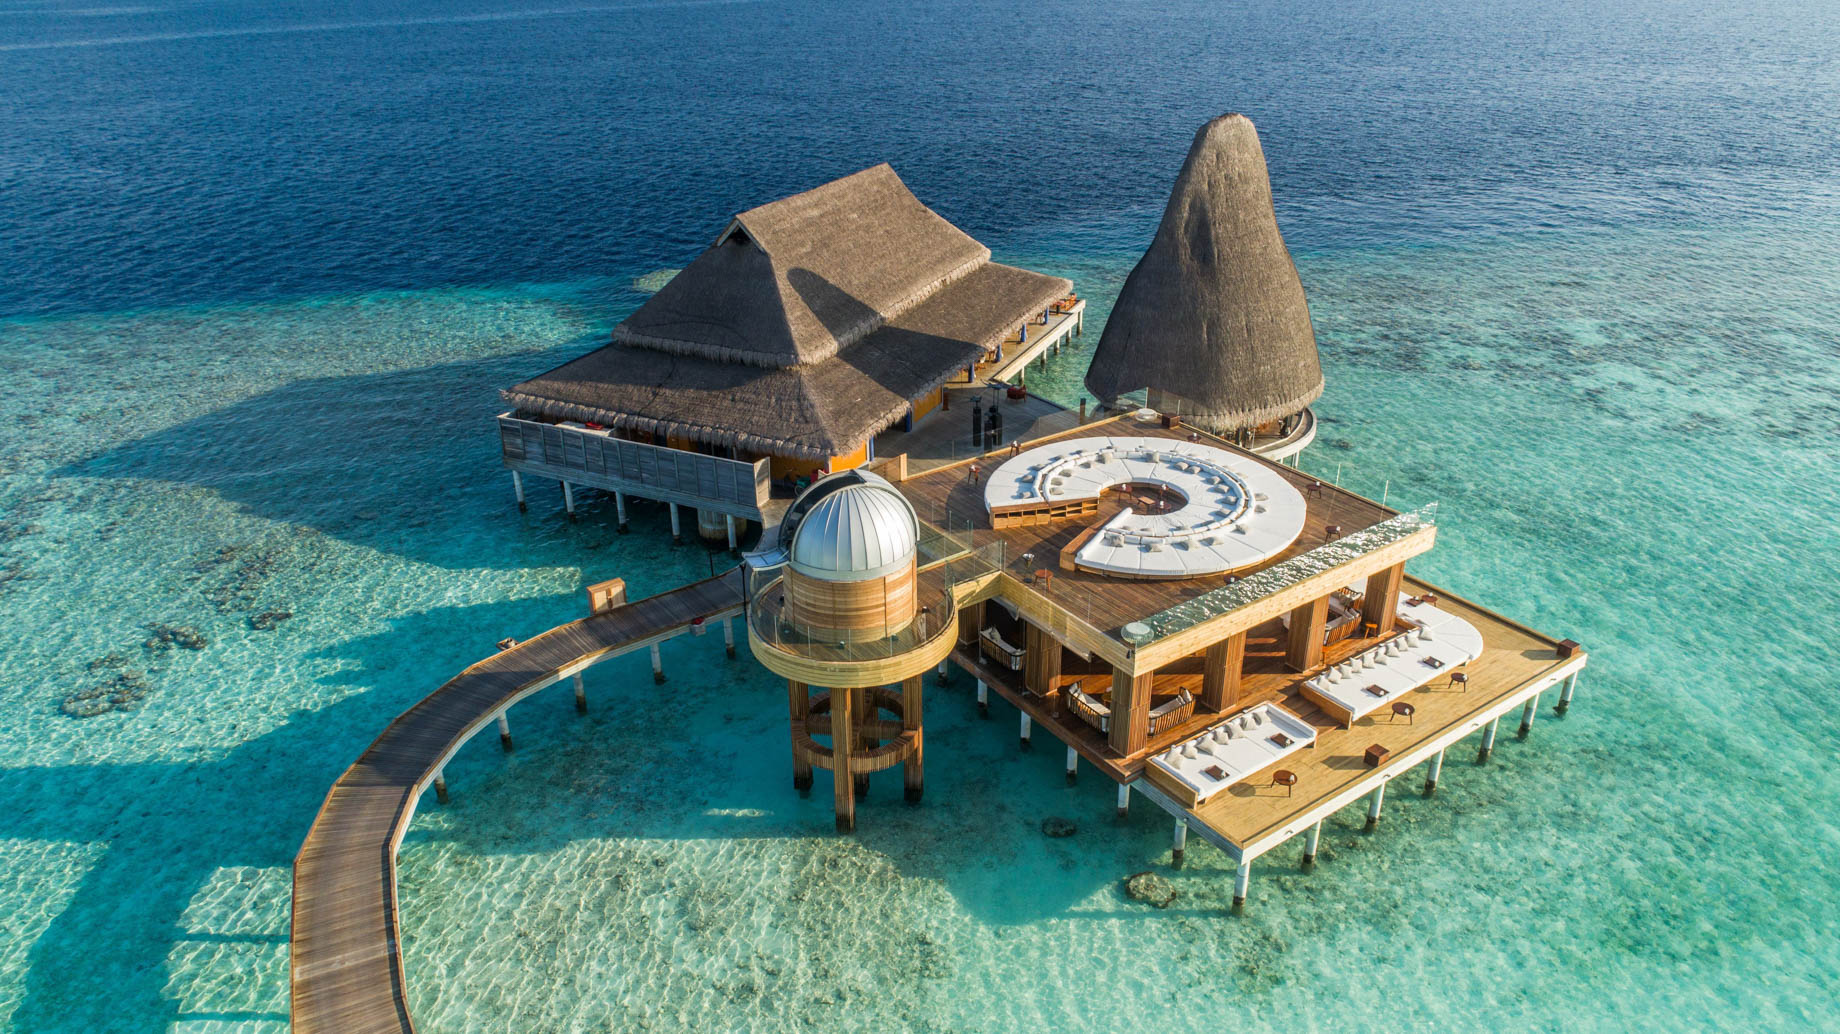 Anantara Kihavah Maldives Villas Resort – Baa Atoll, Maldives – Overwater Observatory and Bar SEA.FIRE.SPICE.SKY. Aerial View